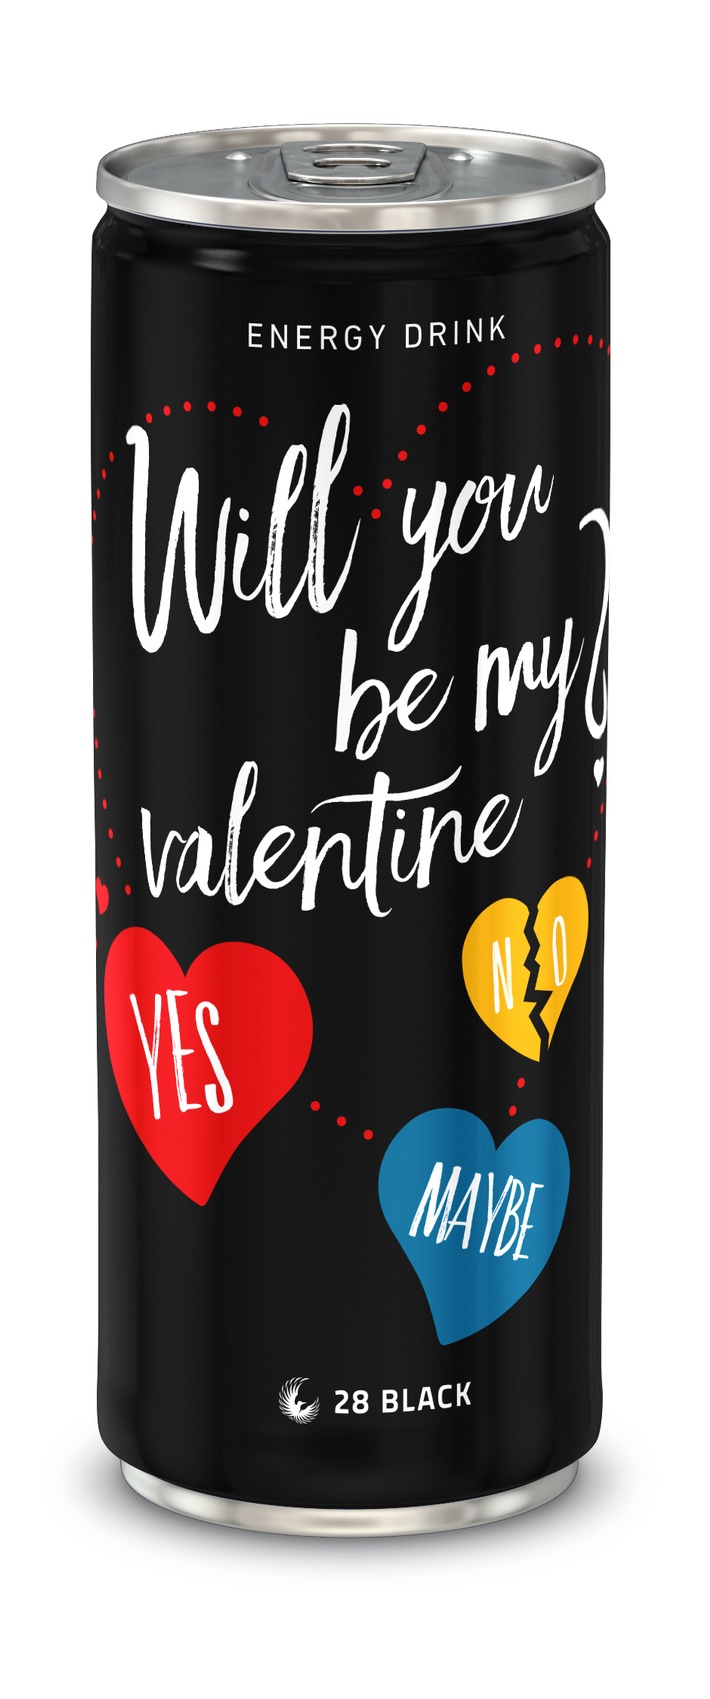 &quot;Will you be my valentine?&quot; - Ja, nein oder vielleicht? /  Valentins-Edition von Energy Drink 28 BLACK (FOTO)